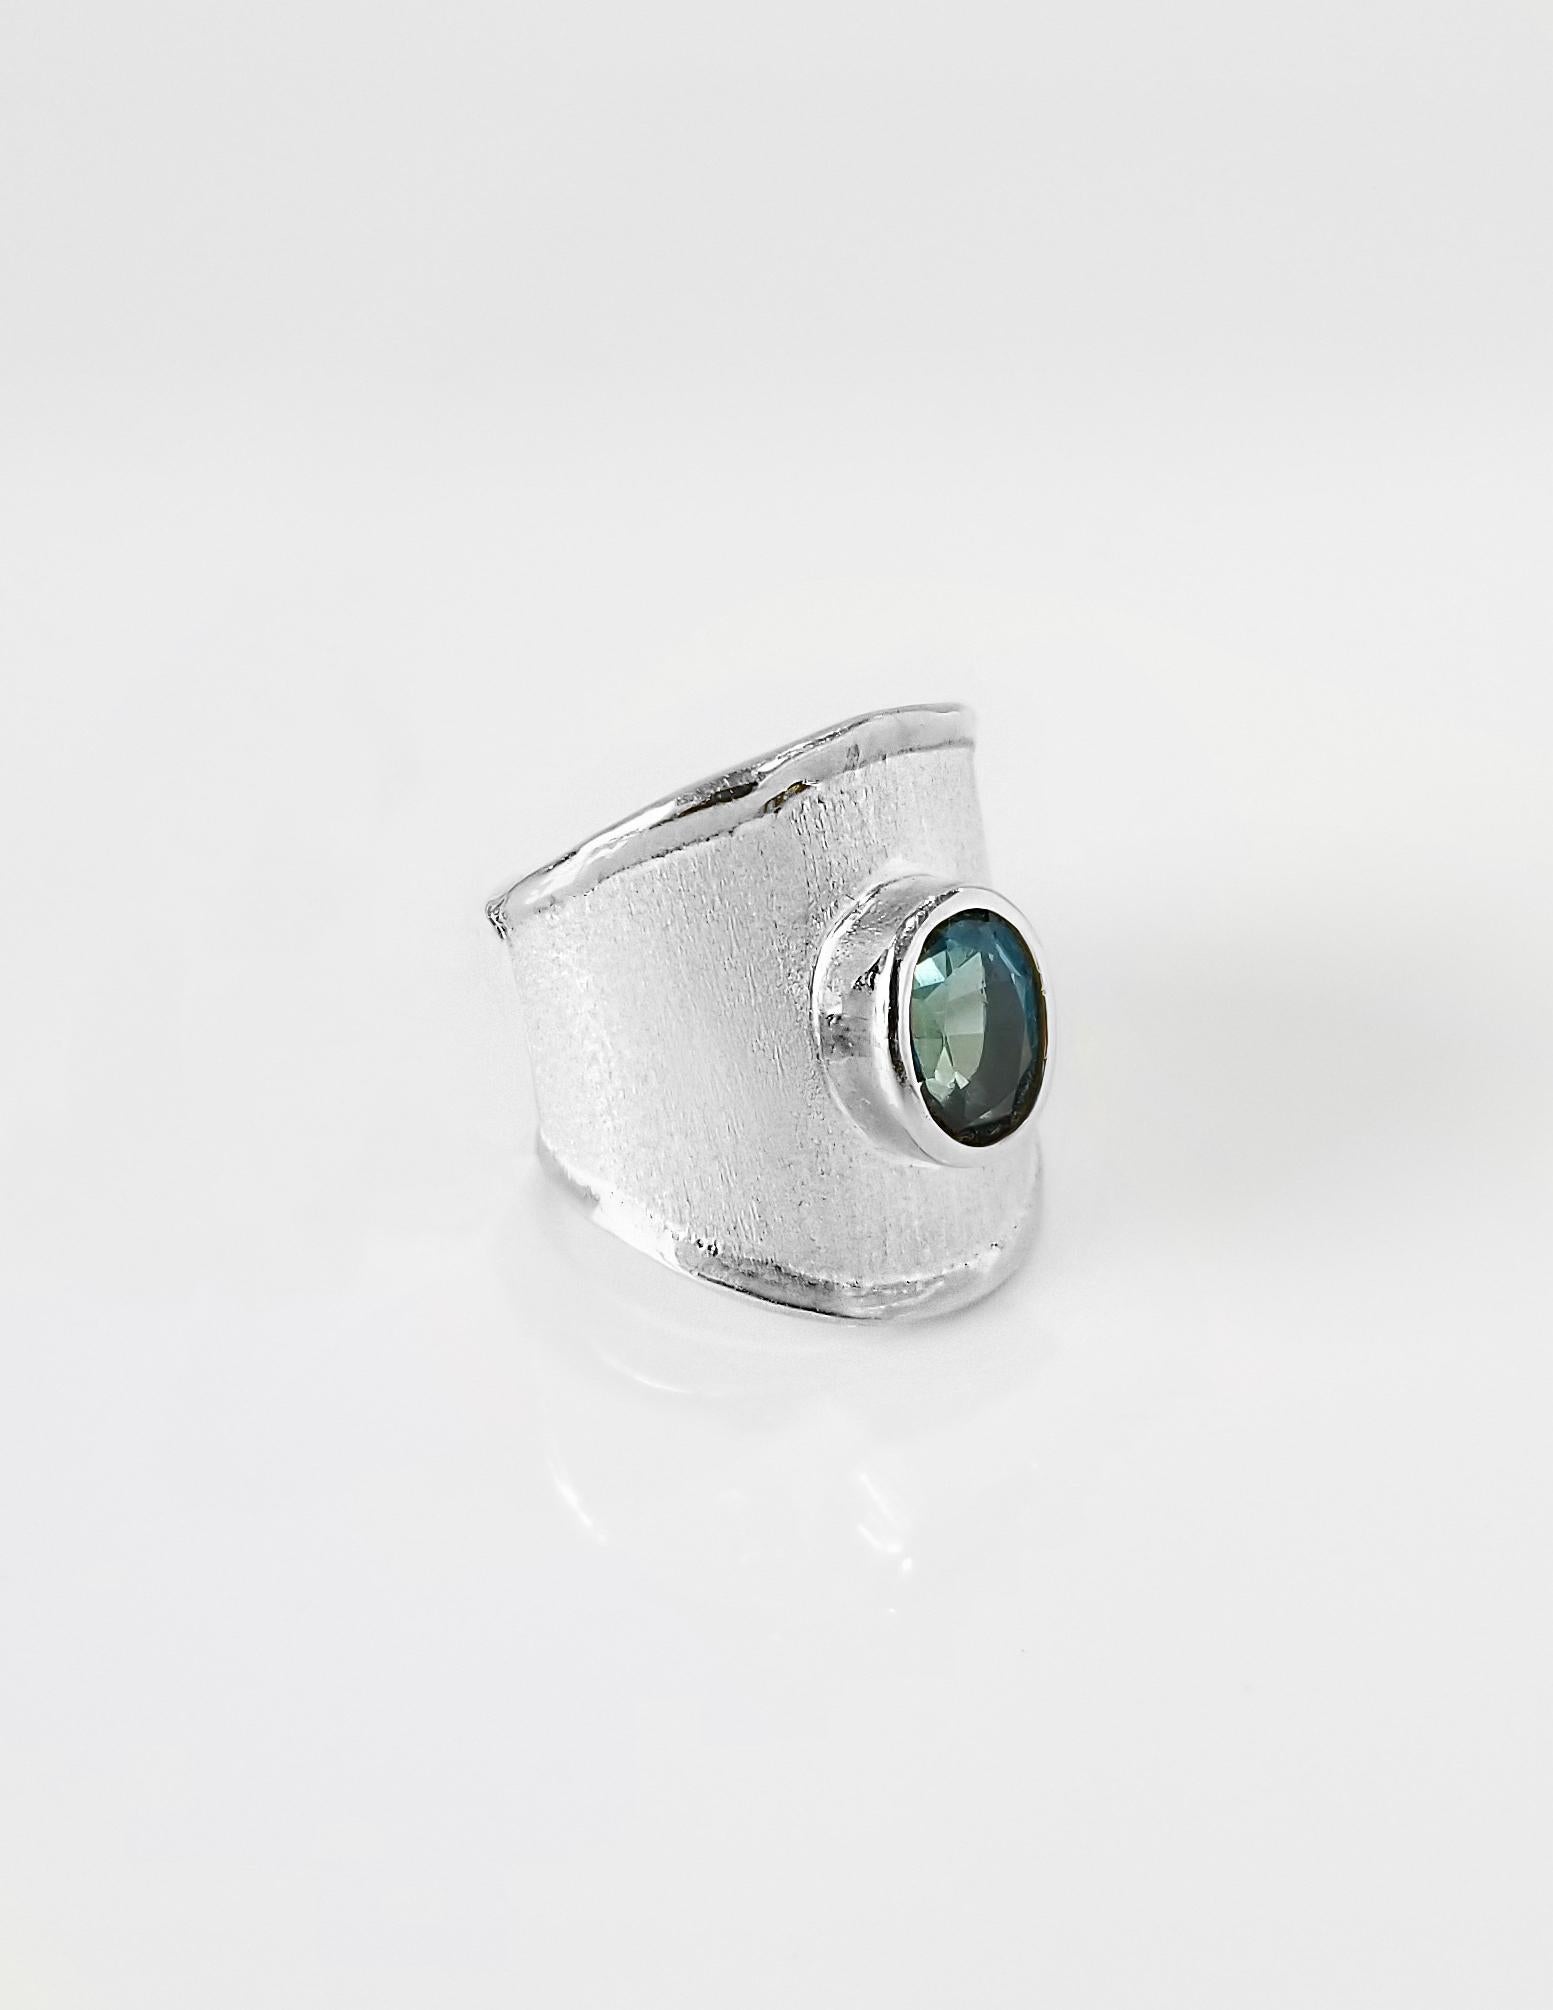 Von Yianni Creations - Ammos Collection ist dies ein 950 Reinheit Feinsilber Ring handgefertigt in Griechenland mit gebürsteten Textur mit Palladium beschichtet, um die Elemente zu widerstehen. Der einzigartige Look wird durch 1,60 Karat Londoner